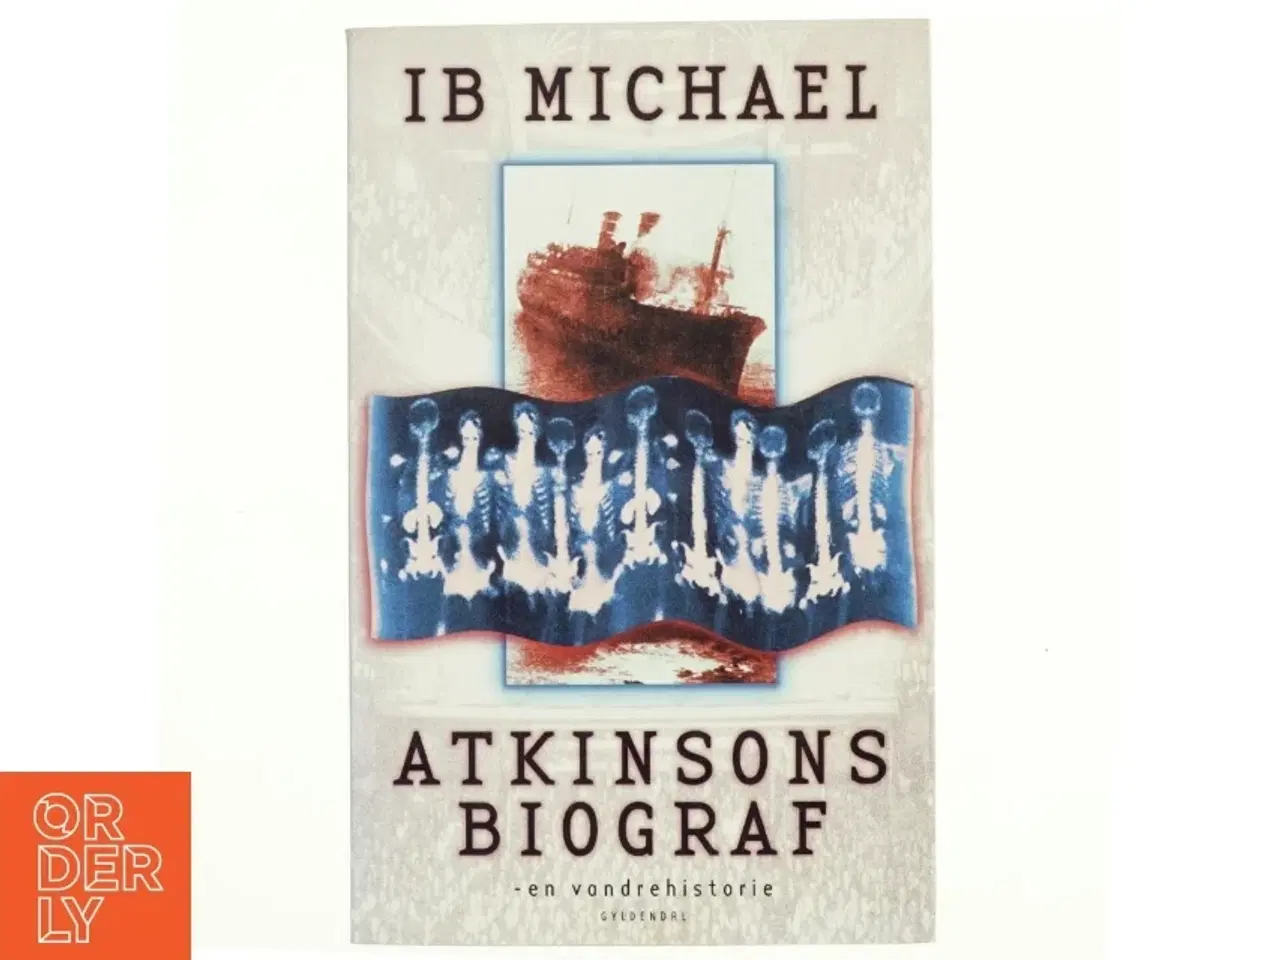 Billede 1 - Atkinsons biograf - en vandrehistorie af Ib Michael (Bog)